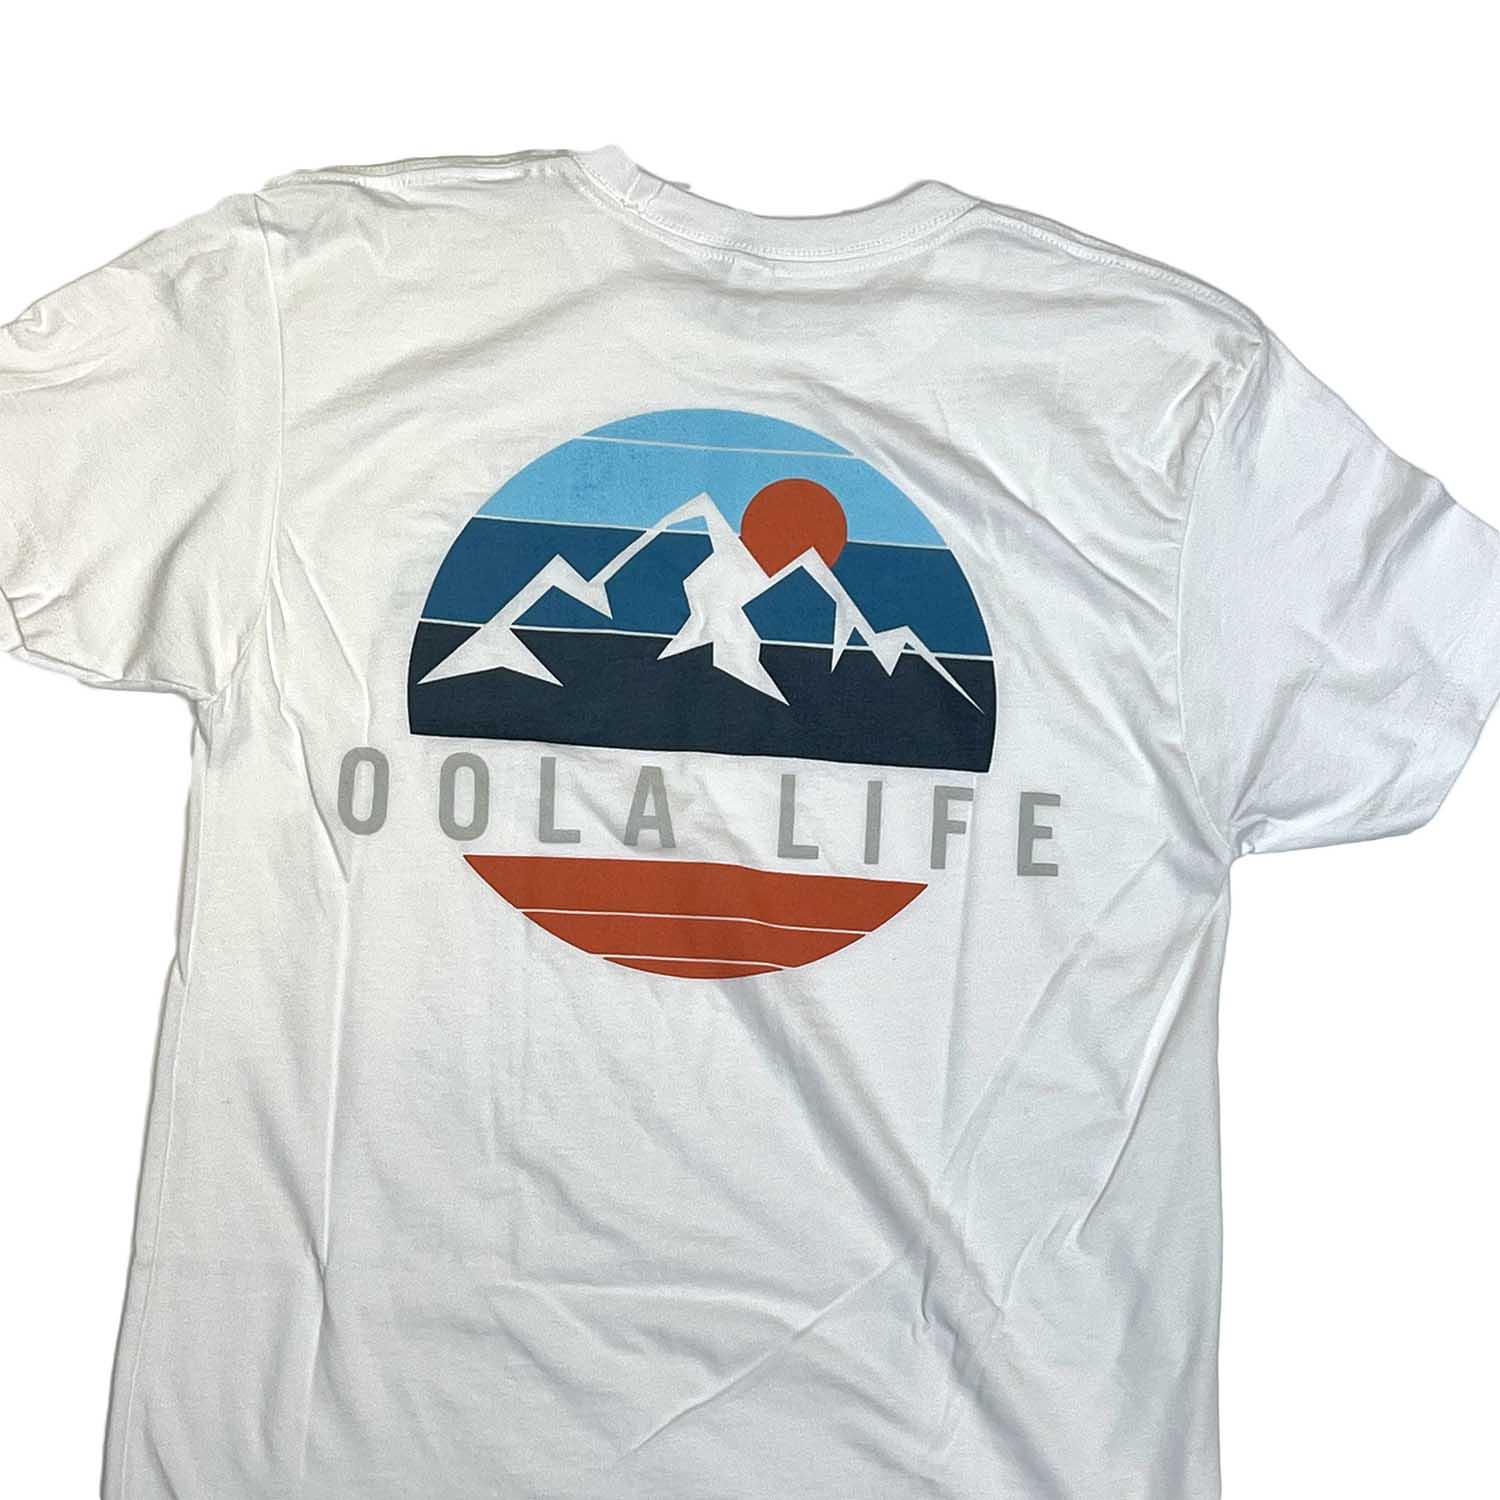 Oola Life Mountain tee: White